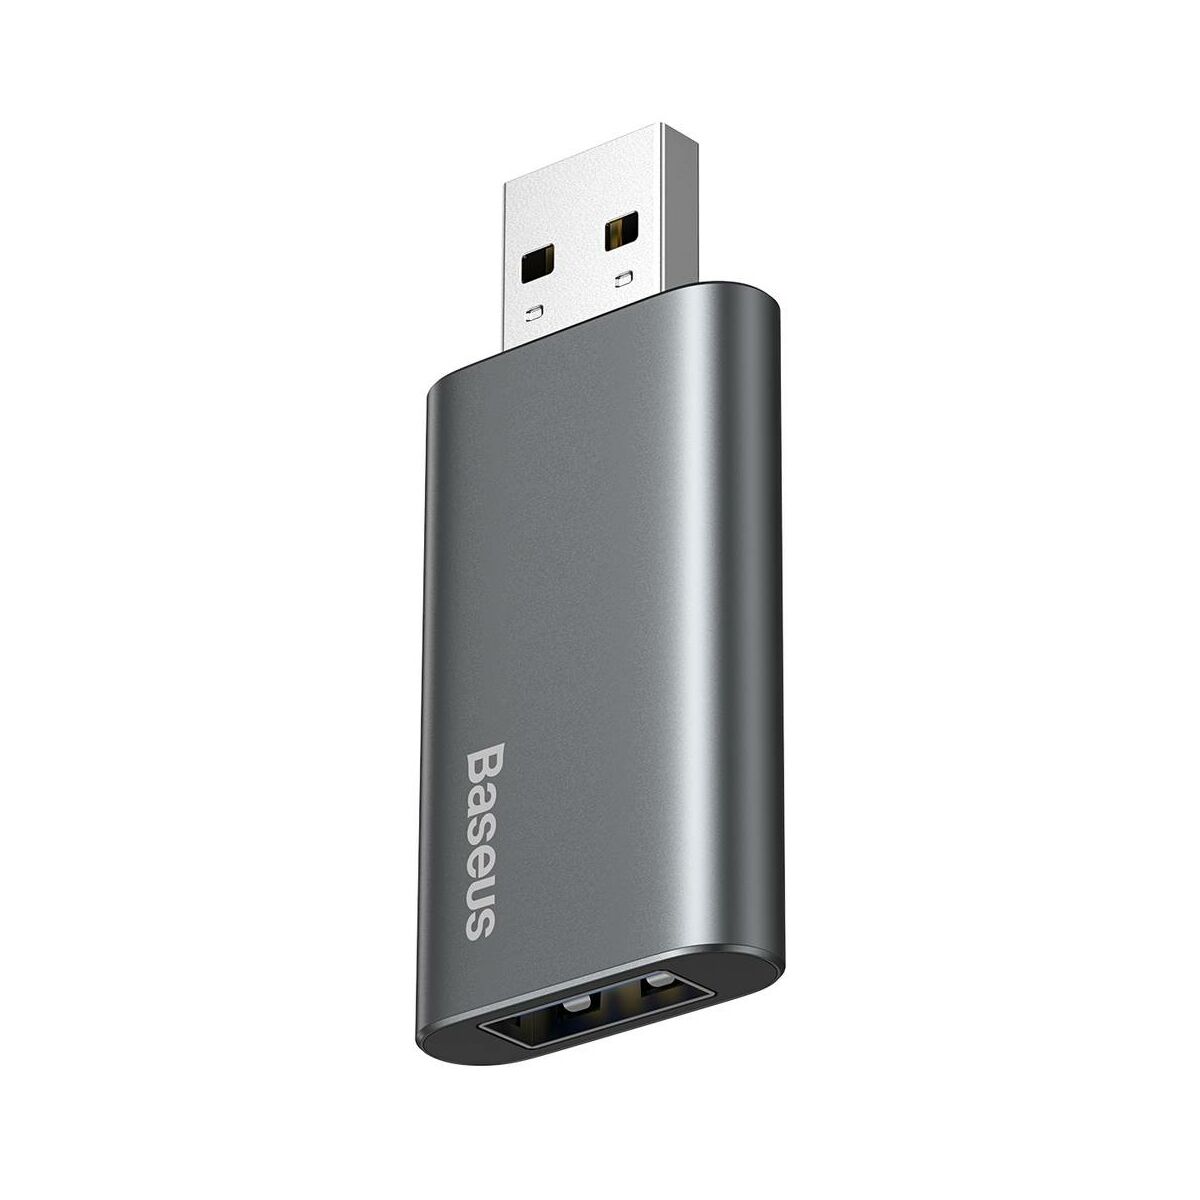 Kép 3/14 - Baseus Audio, Enjoy Flash Drive USB 3.0 töltő funkcióval, alumínium ház, 64GB, fekete (ACUP-C0A)